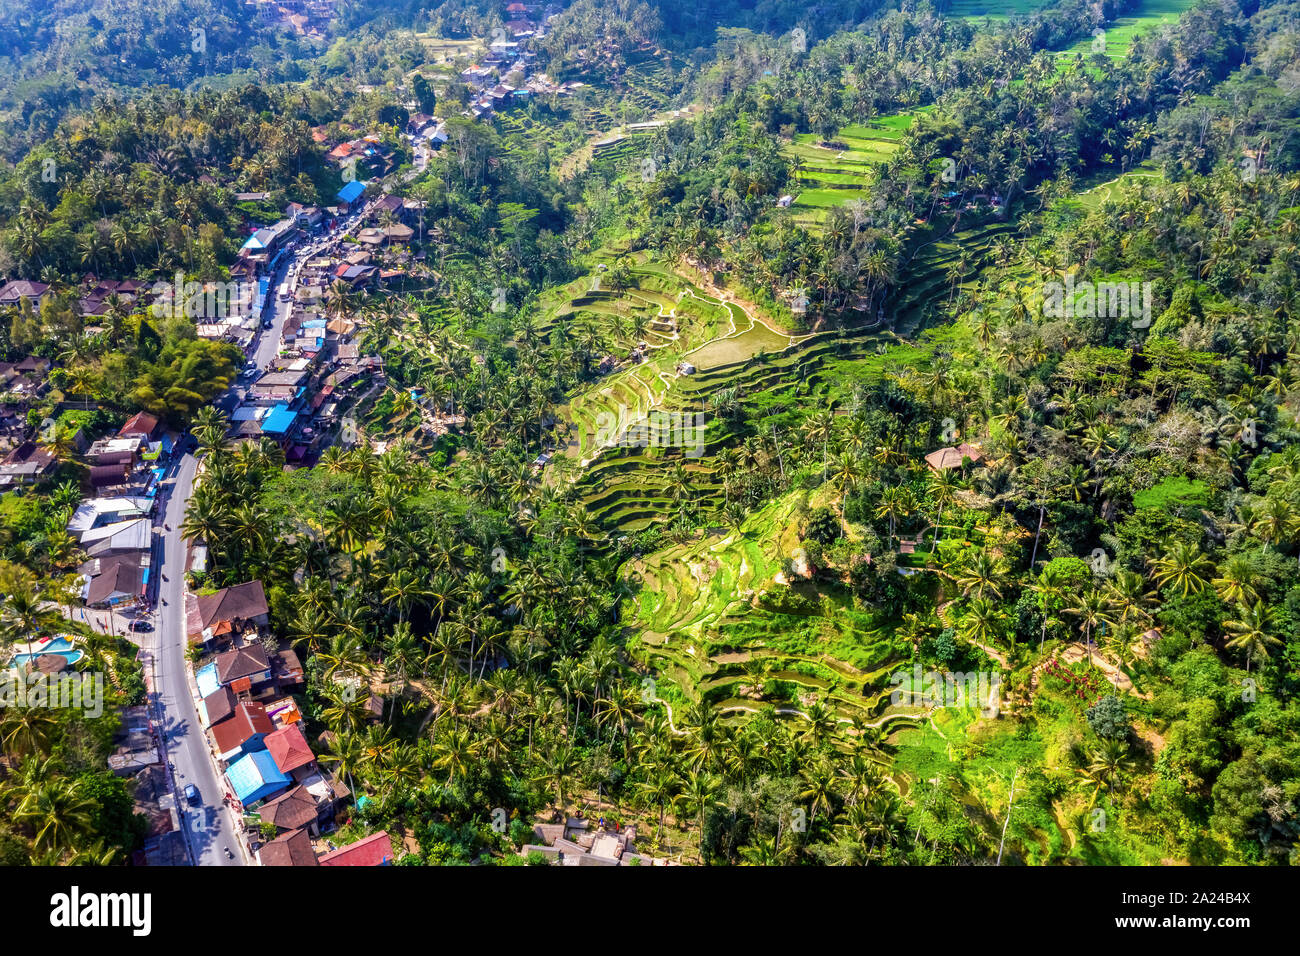 Vista aérea del pueblo Tegallalang y campo de arroz terraza, Bandung, al oeste de Java, Indonesia, Asia. Alta calidad royalty free stock image de Bali. Foto de stock